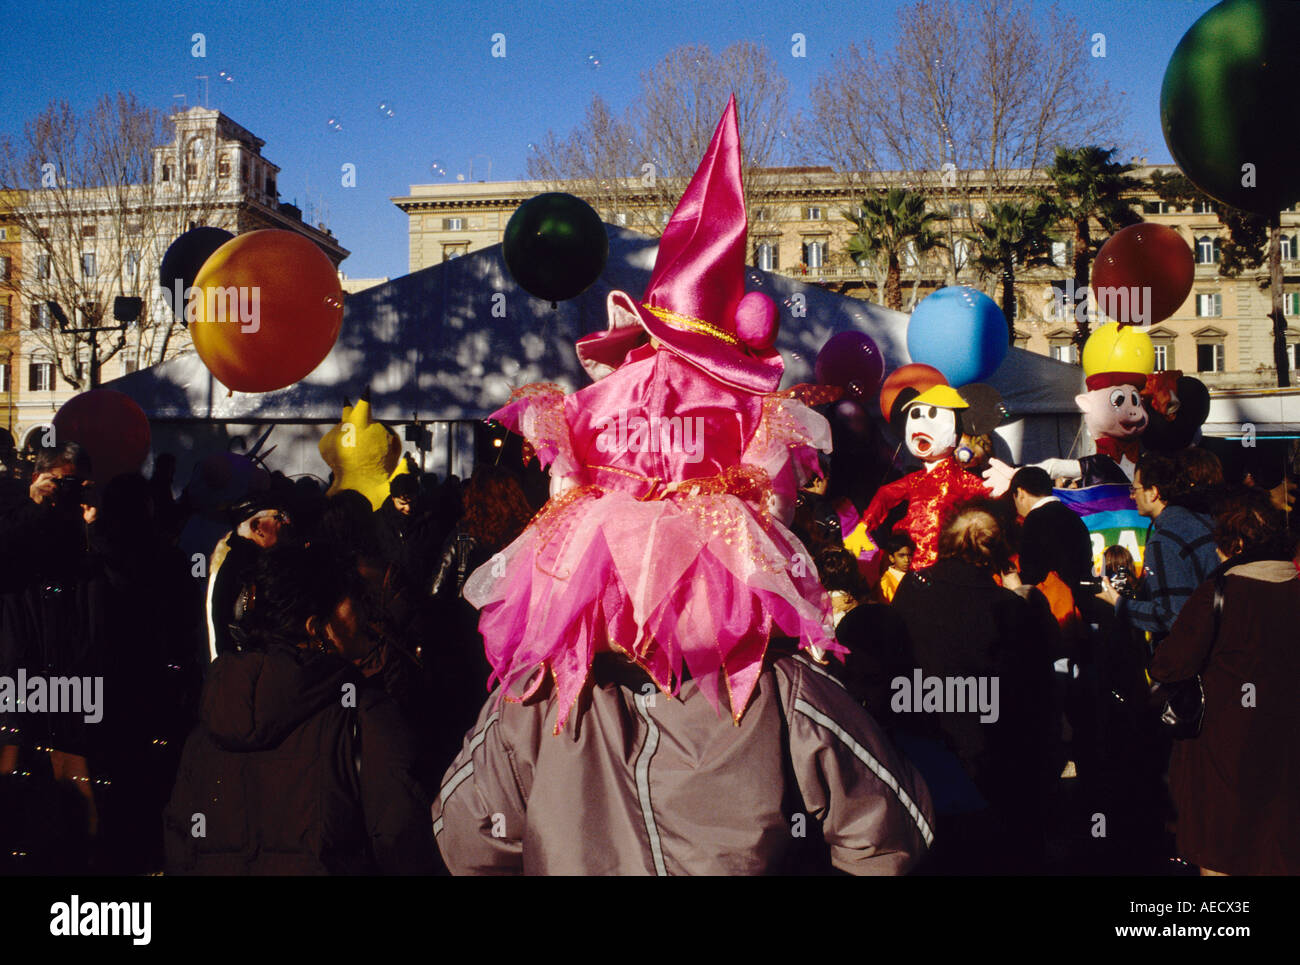 Carnevale roma immagini e fotografie stock ad alta risoluzione - Alamy